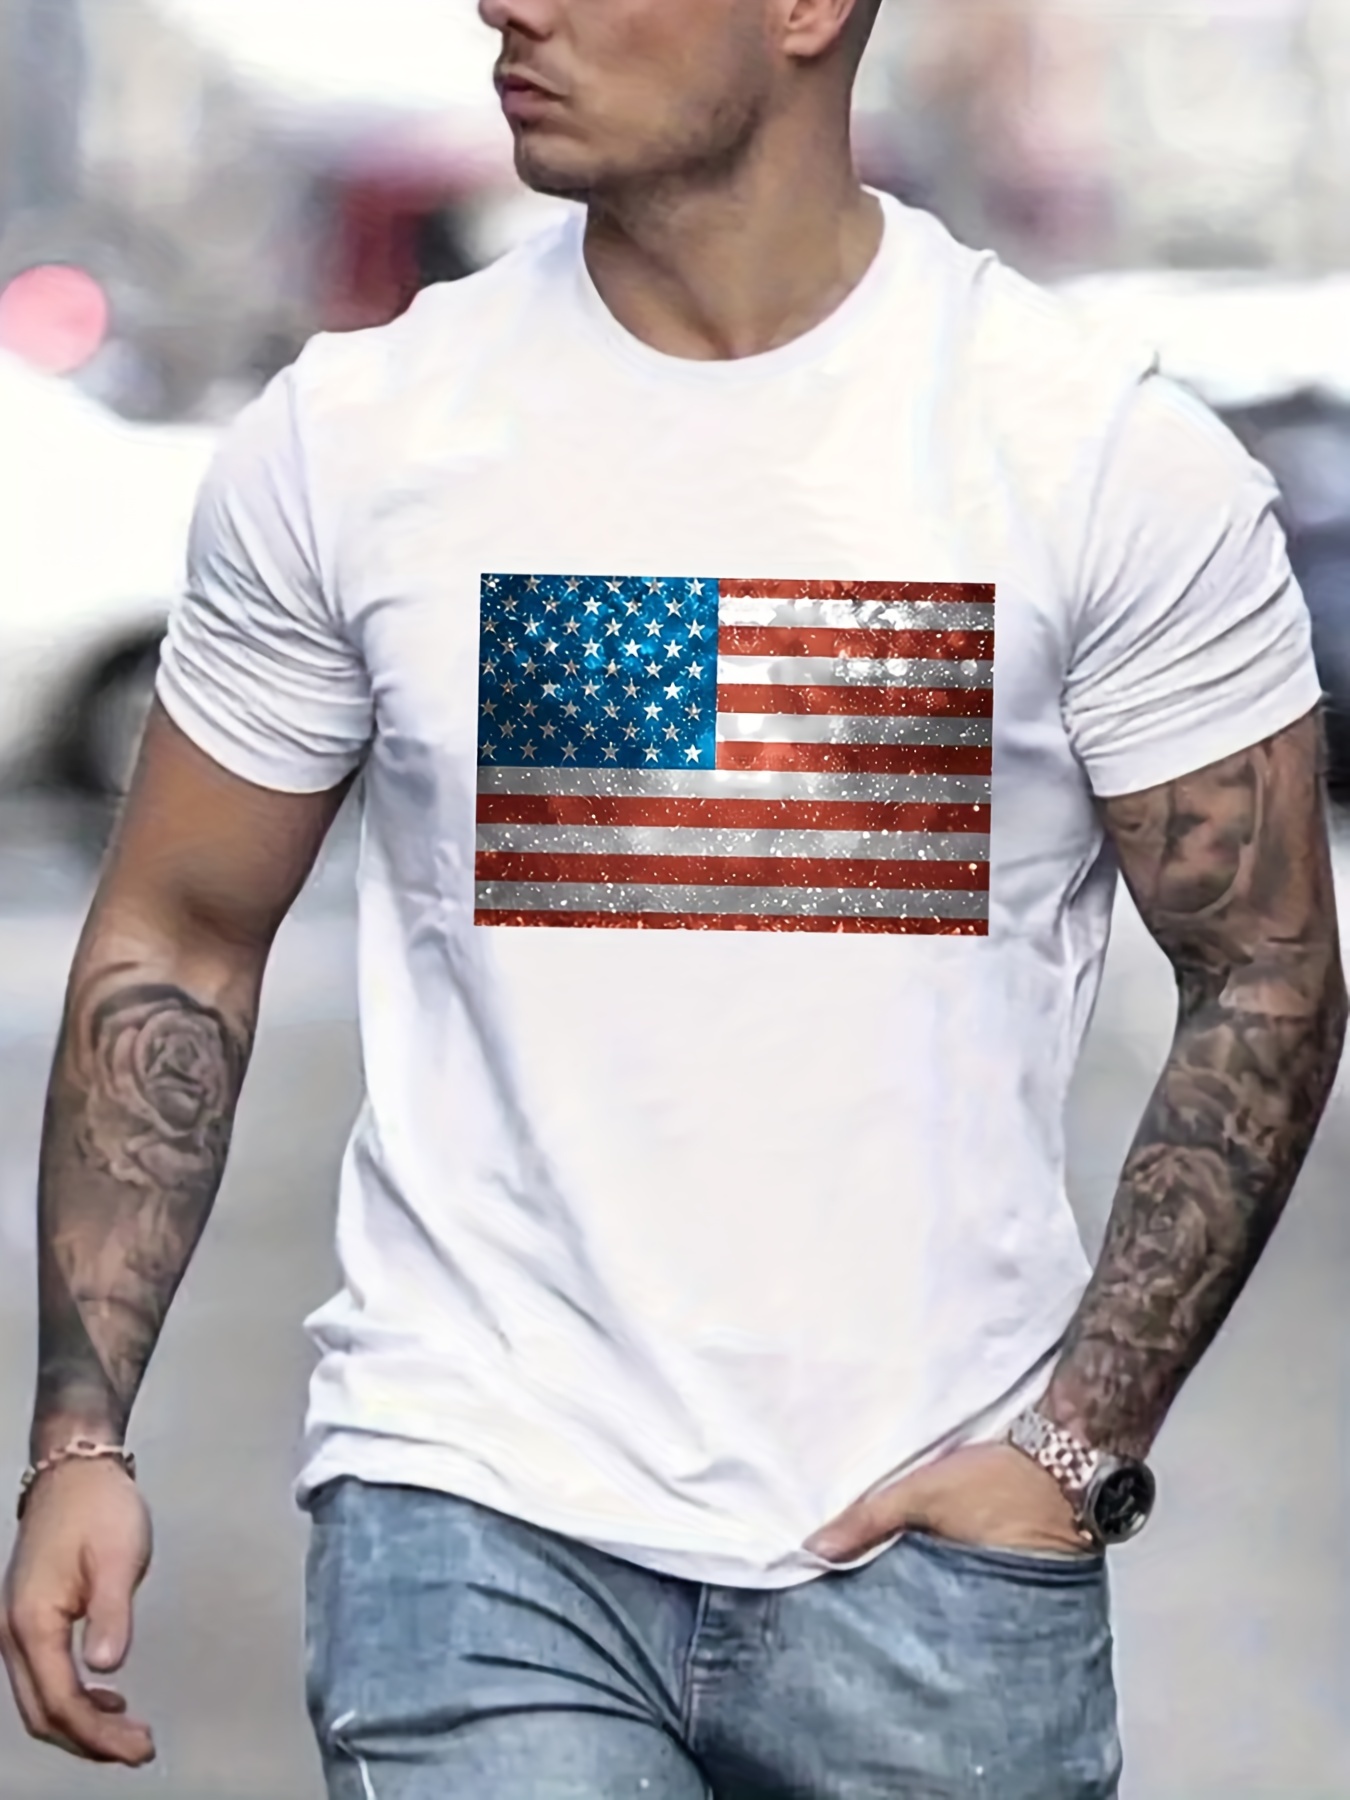 4th Of July Shirts For Men American Flag Printed Mens Usa Tshirt